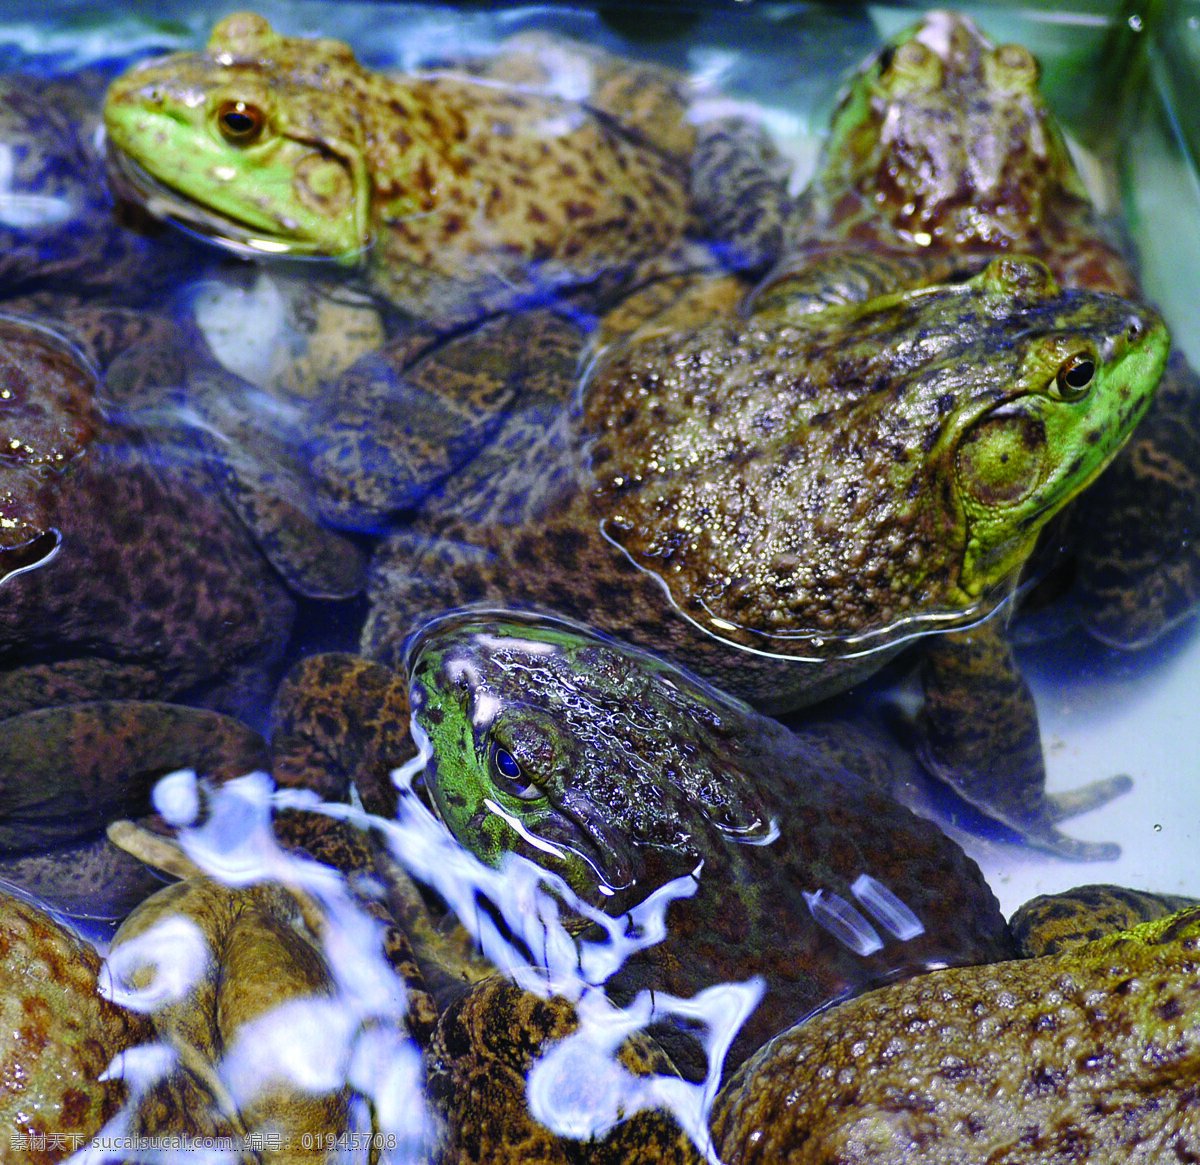 牛蛙 鲜活 蛙类 水产养殖 动物 家禽家畜 生物世界